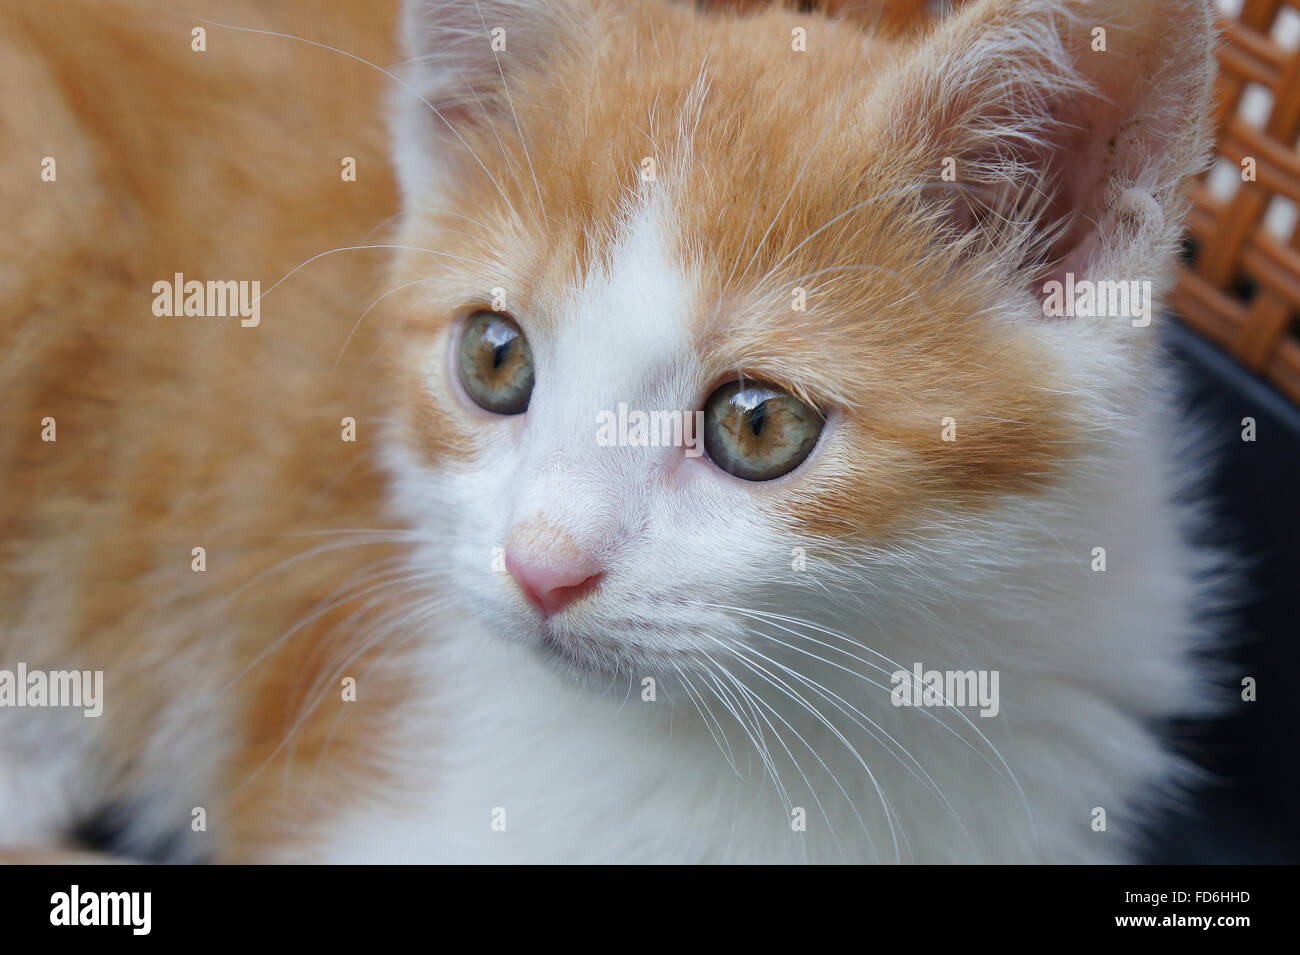 kitten head Stock Photo